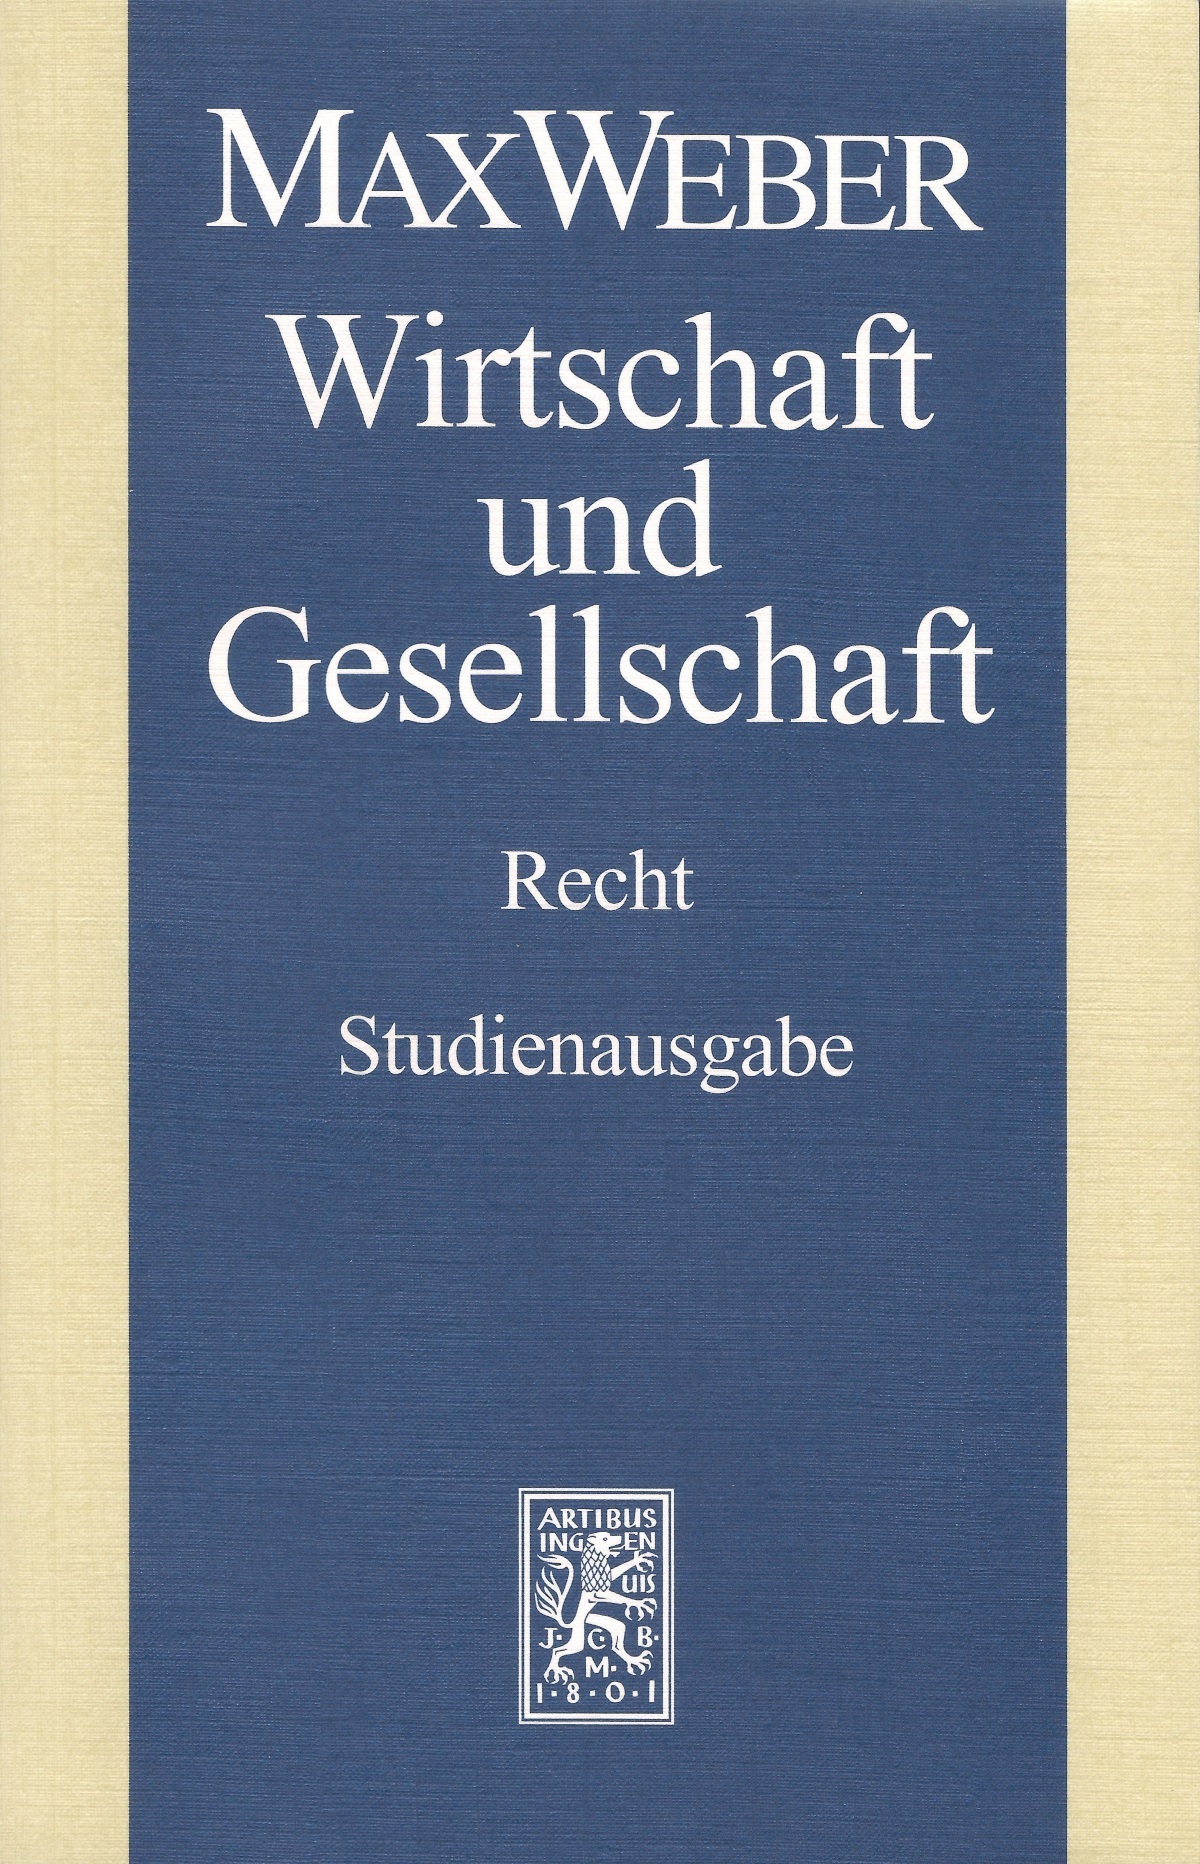 Bild: Max Weber-Studienausgabe I/22,3: Wirtschaft und Gesellschaft. Recht